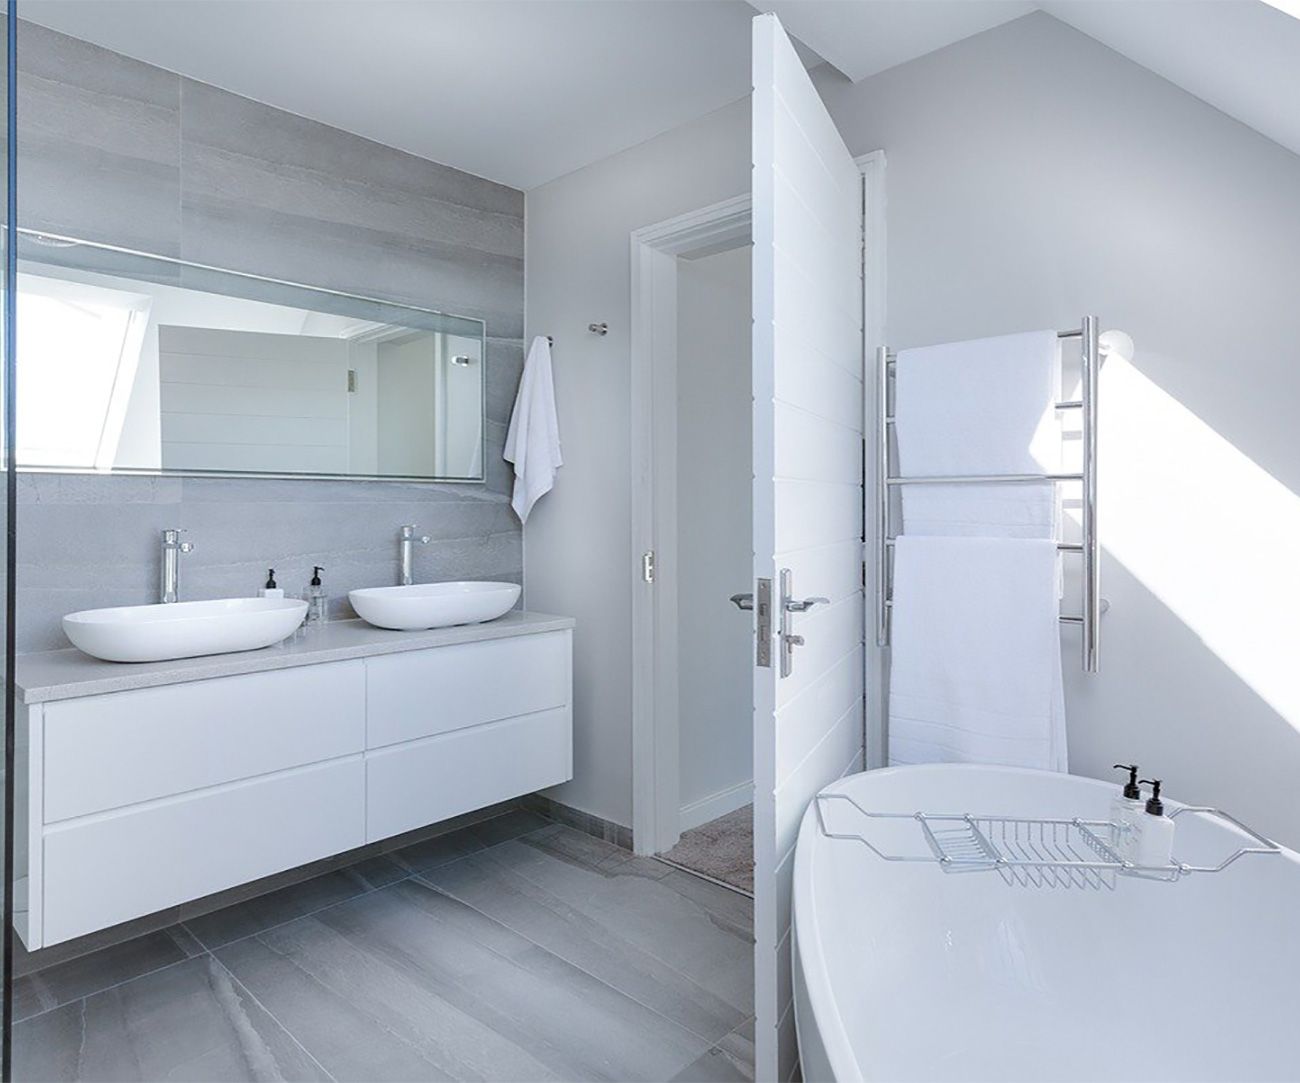 modern-minimalist-bathroom-3115450_1280